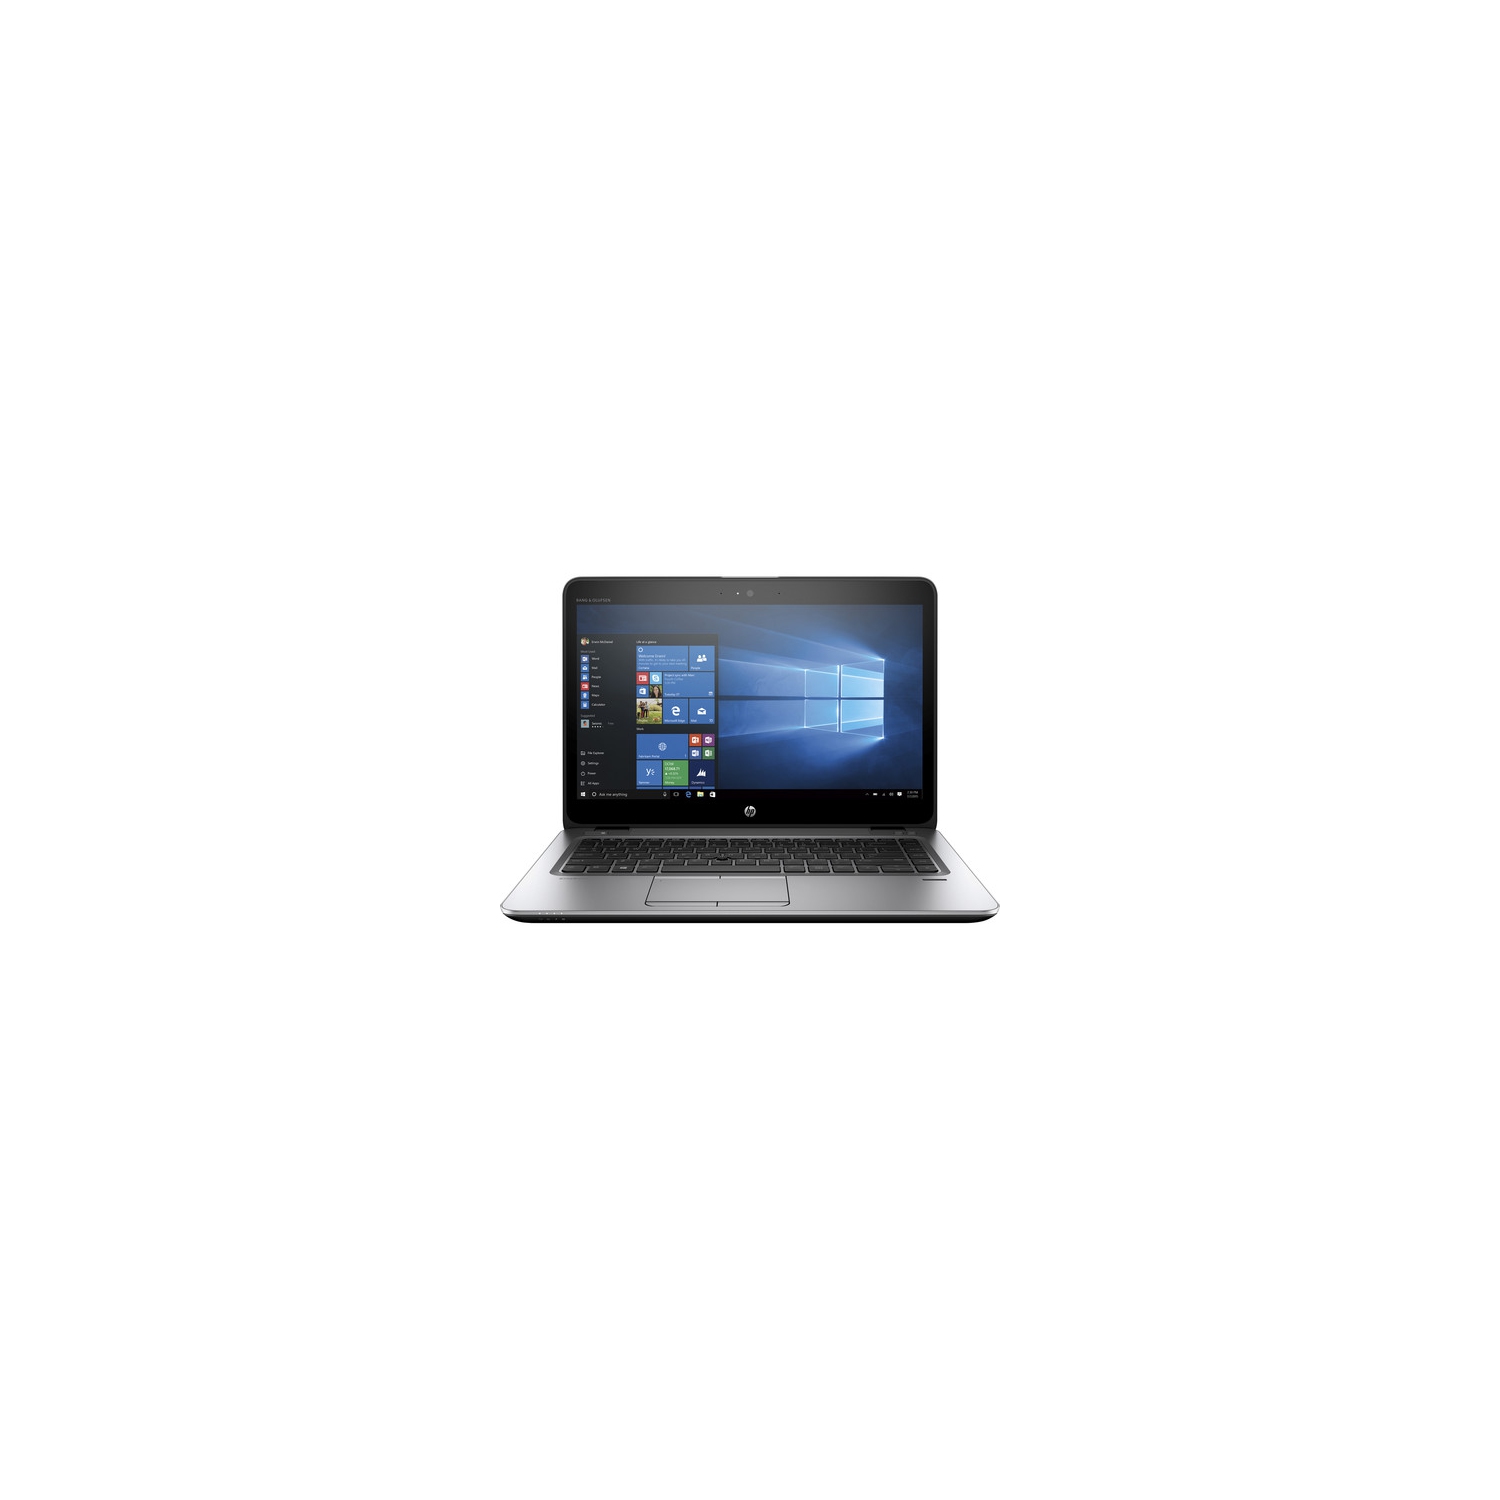 Refurbished (Fair) - HP EliteBook 840 G3 14" Laptop - Intel Core i5-6300u - 8GB RAM - 256GB SSD - Windows 10 Pro